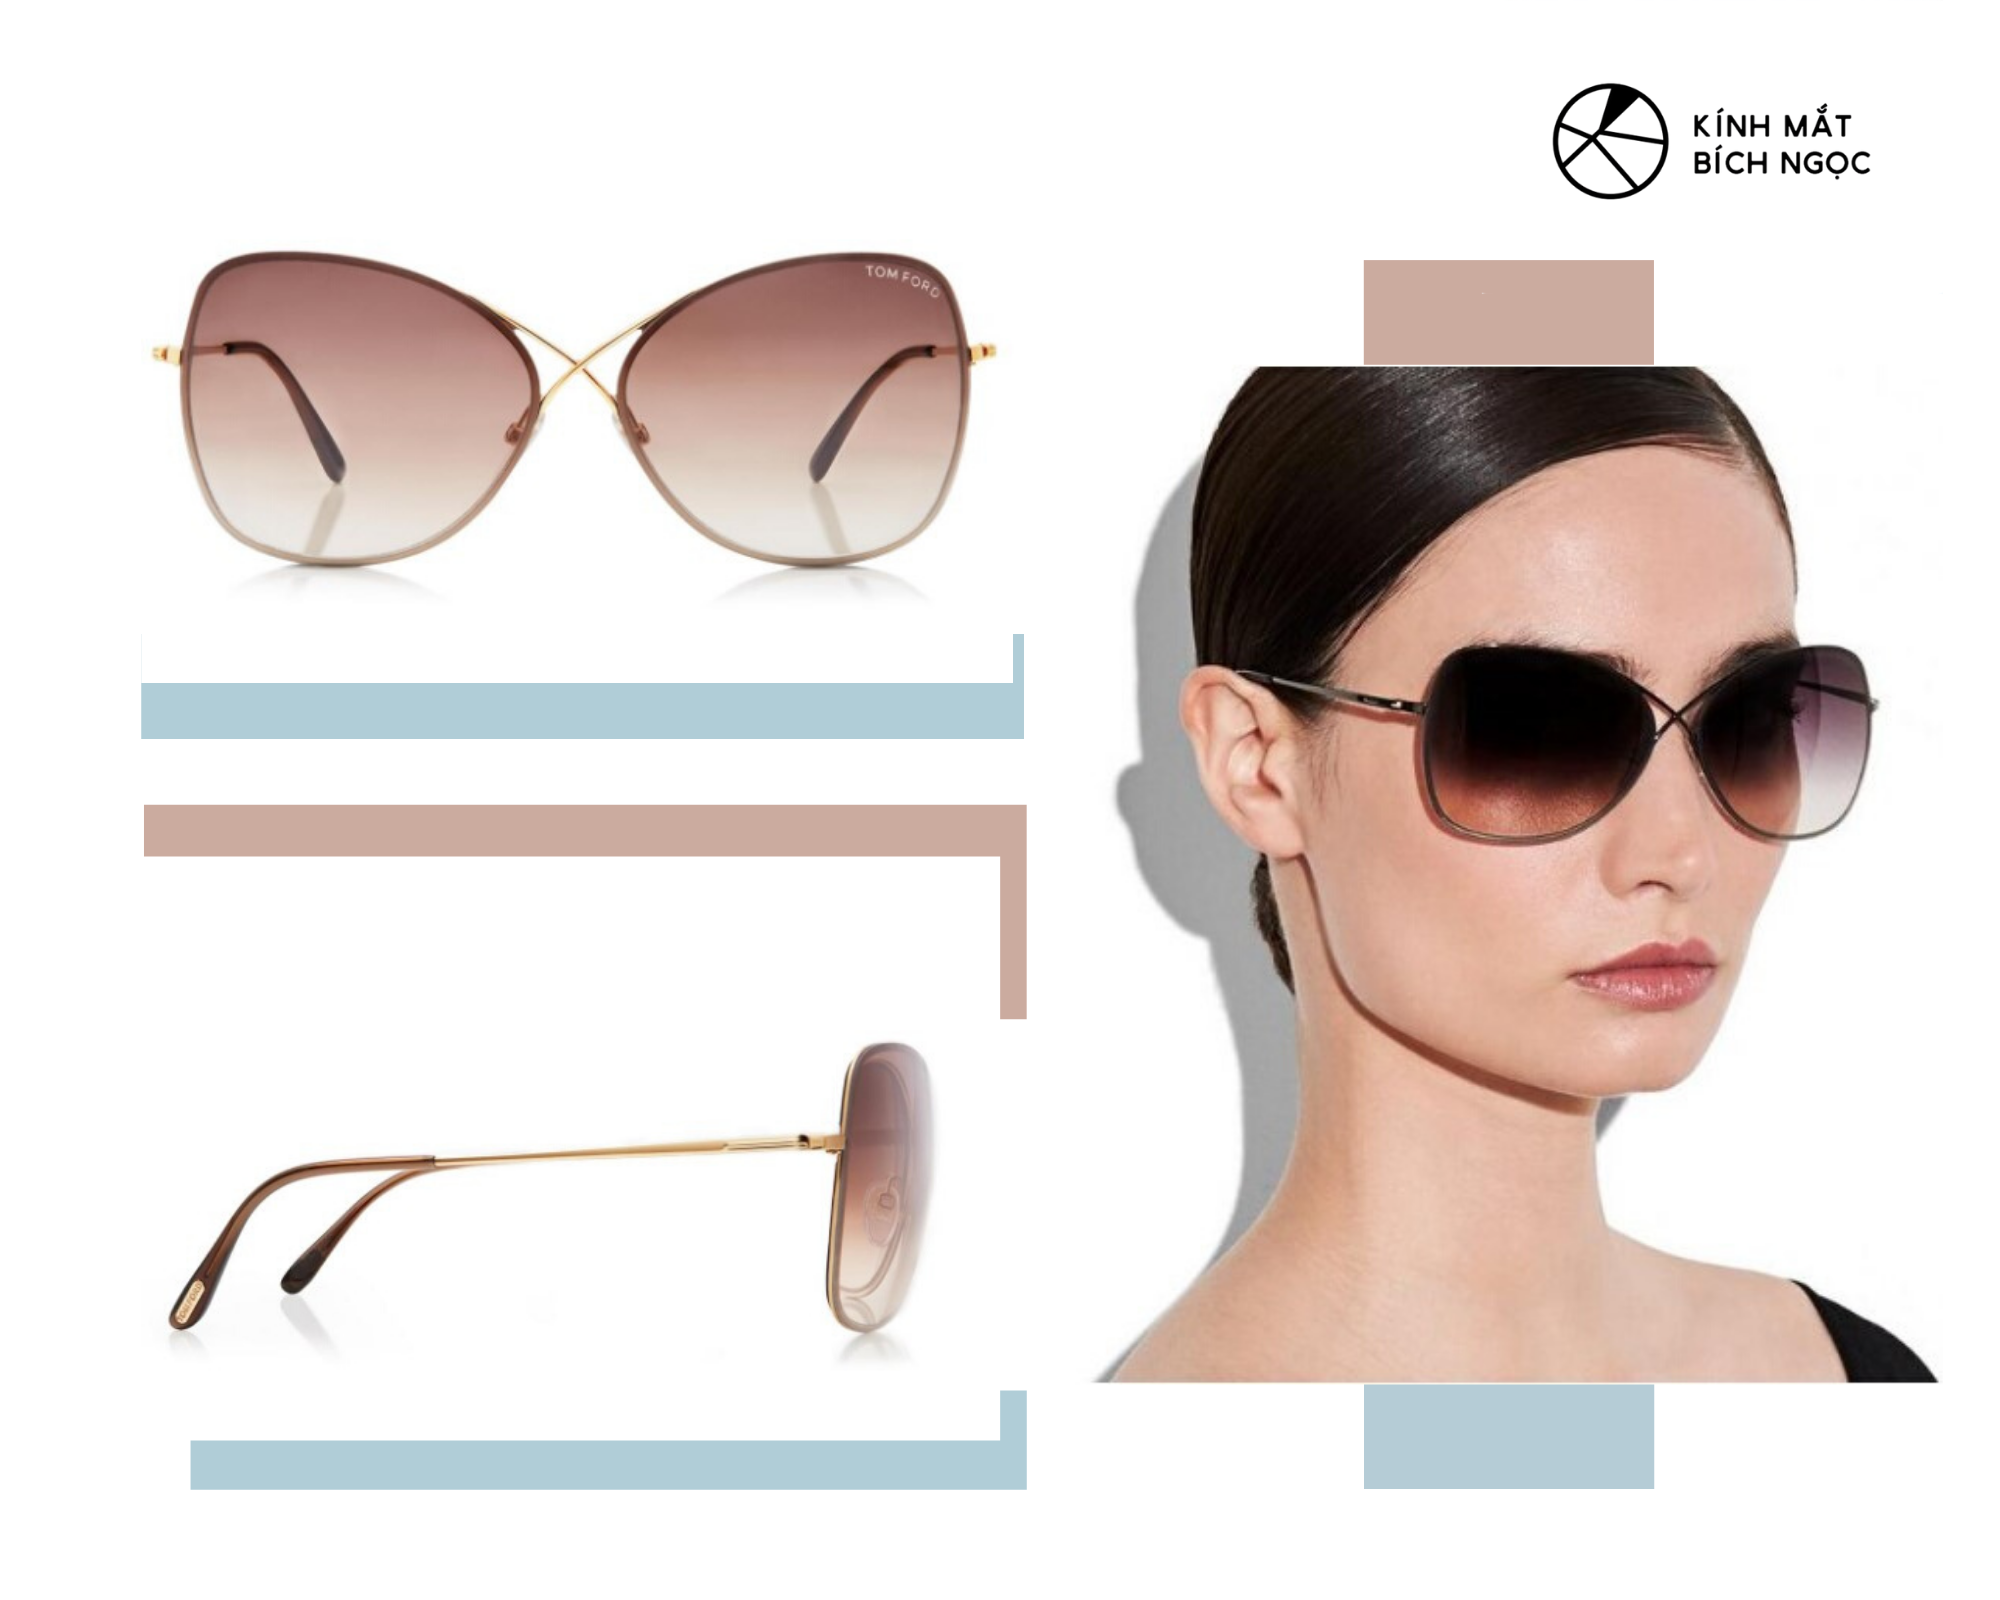 Thiết kế mẫu kính Tom Ford olette Butterfly Sunglasses có giá 340$